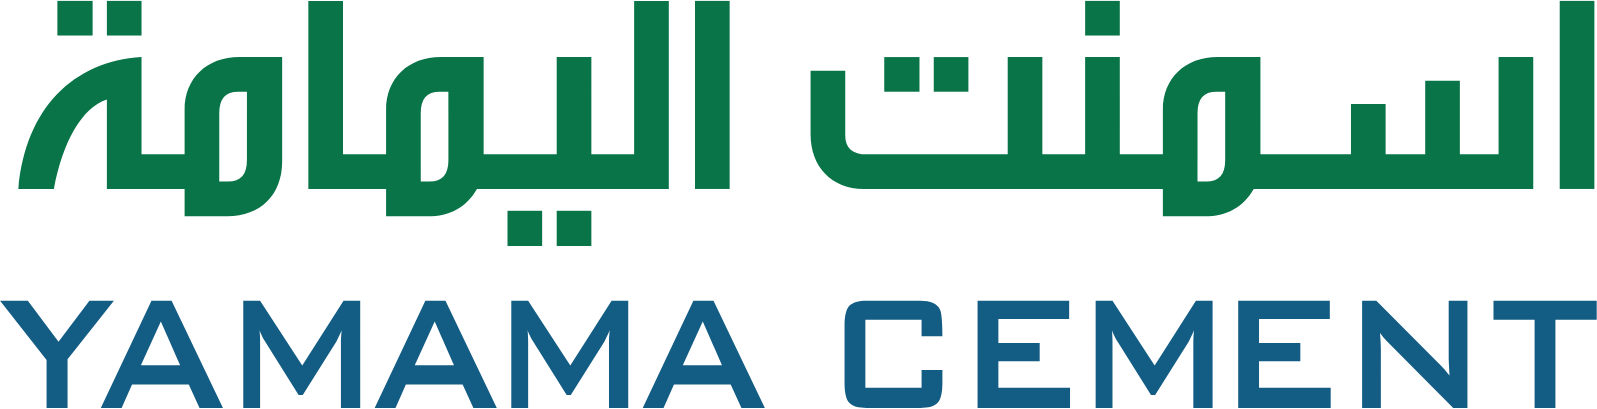 Yamama Saudi Cement Company Logo (transparentes PNG)